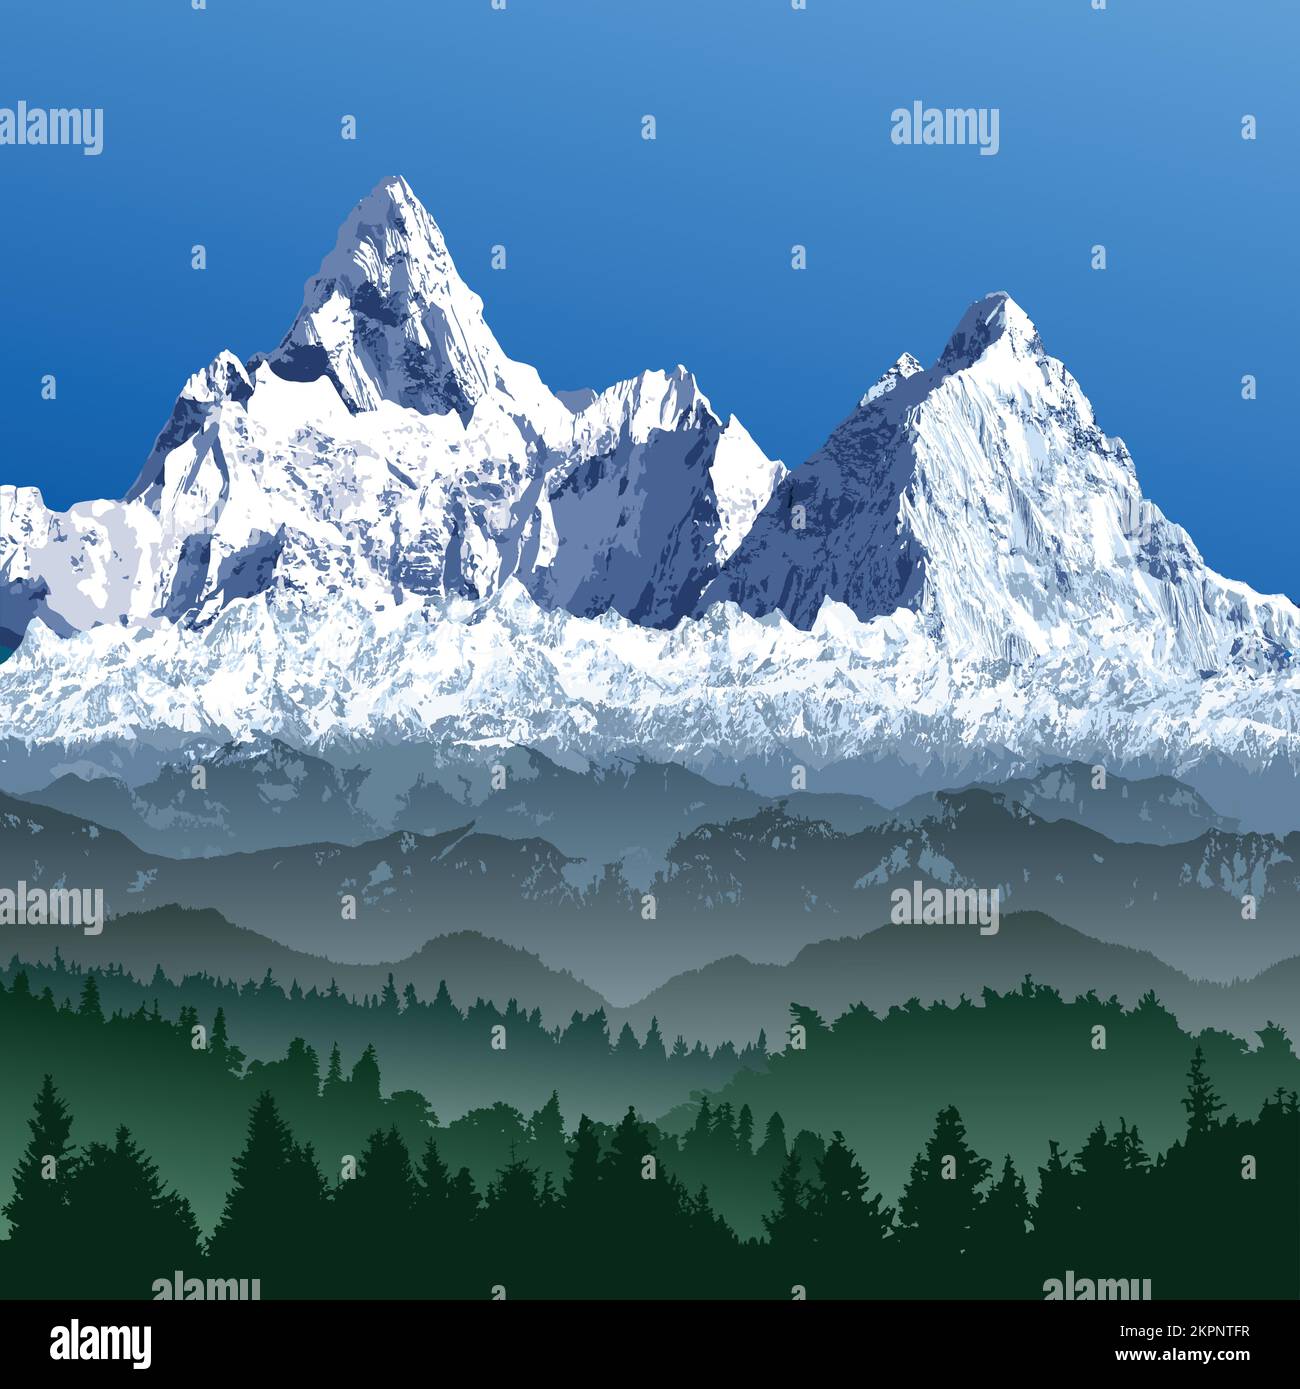 Grande catena himalayana, Himalayas montagne vettoriali illustrazione, montagna innevata di colore bianco e blu con boschi Illustrazione Vettoriale